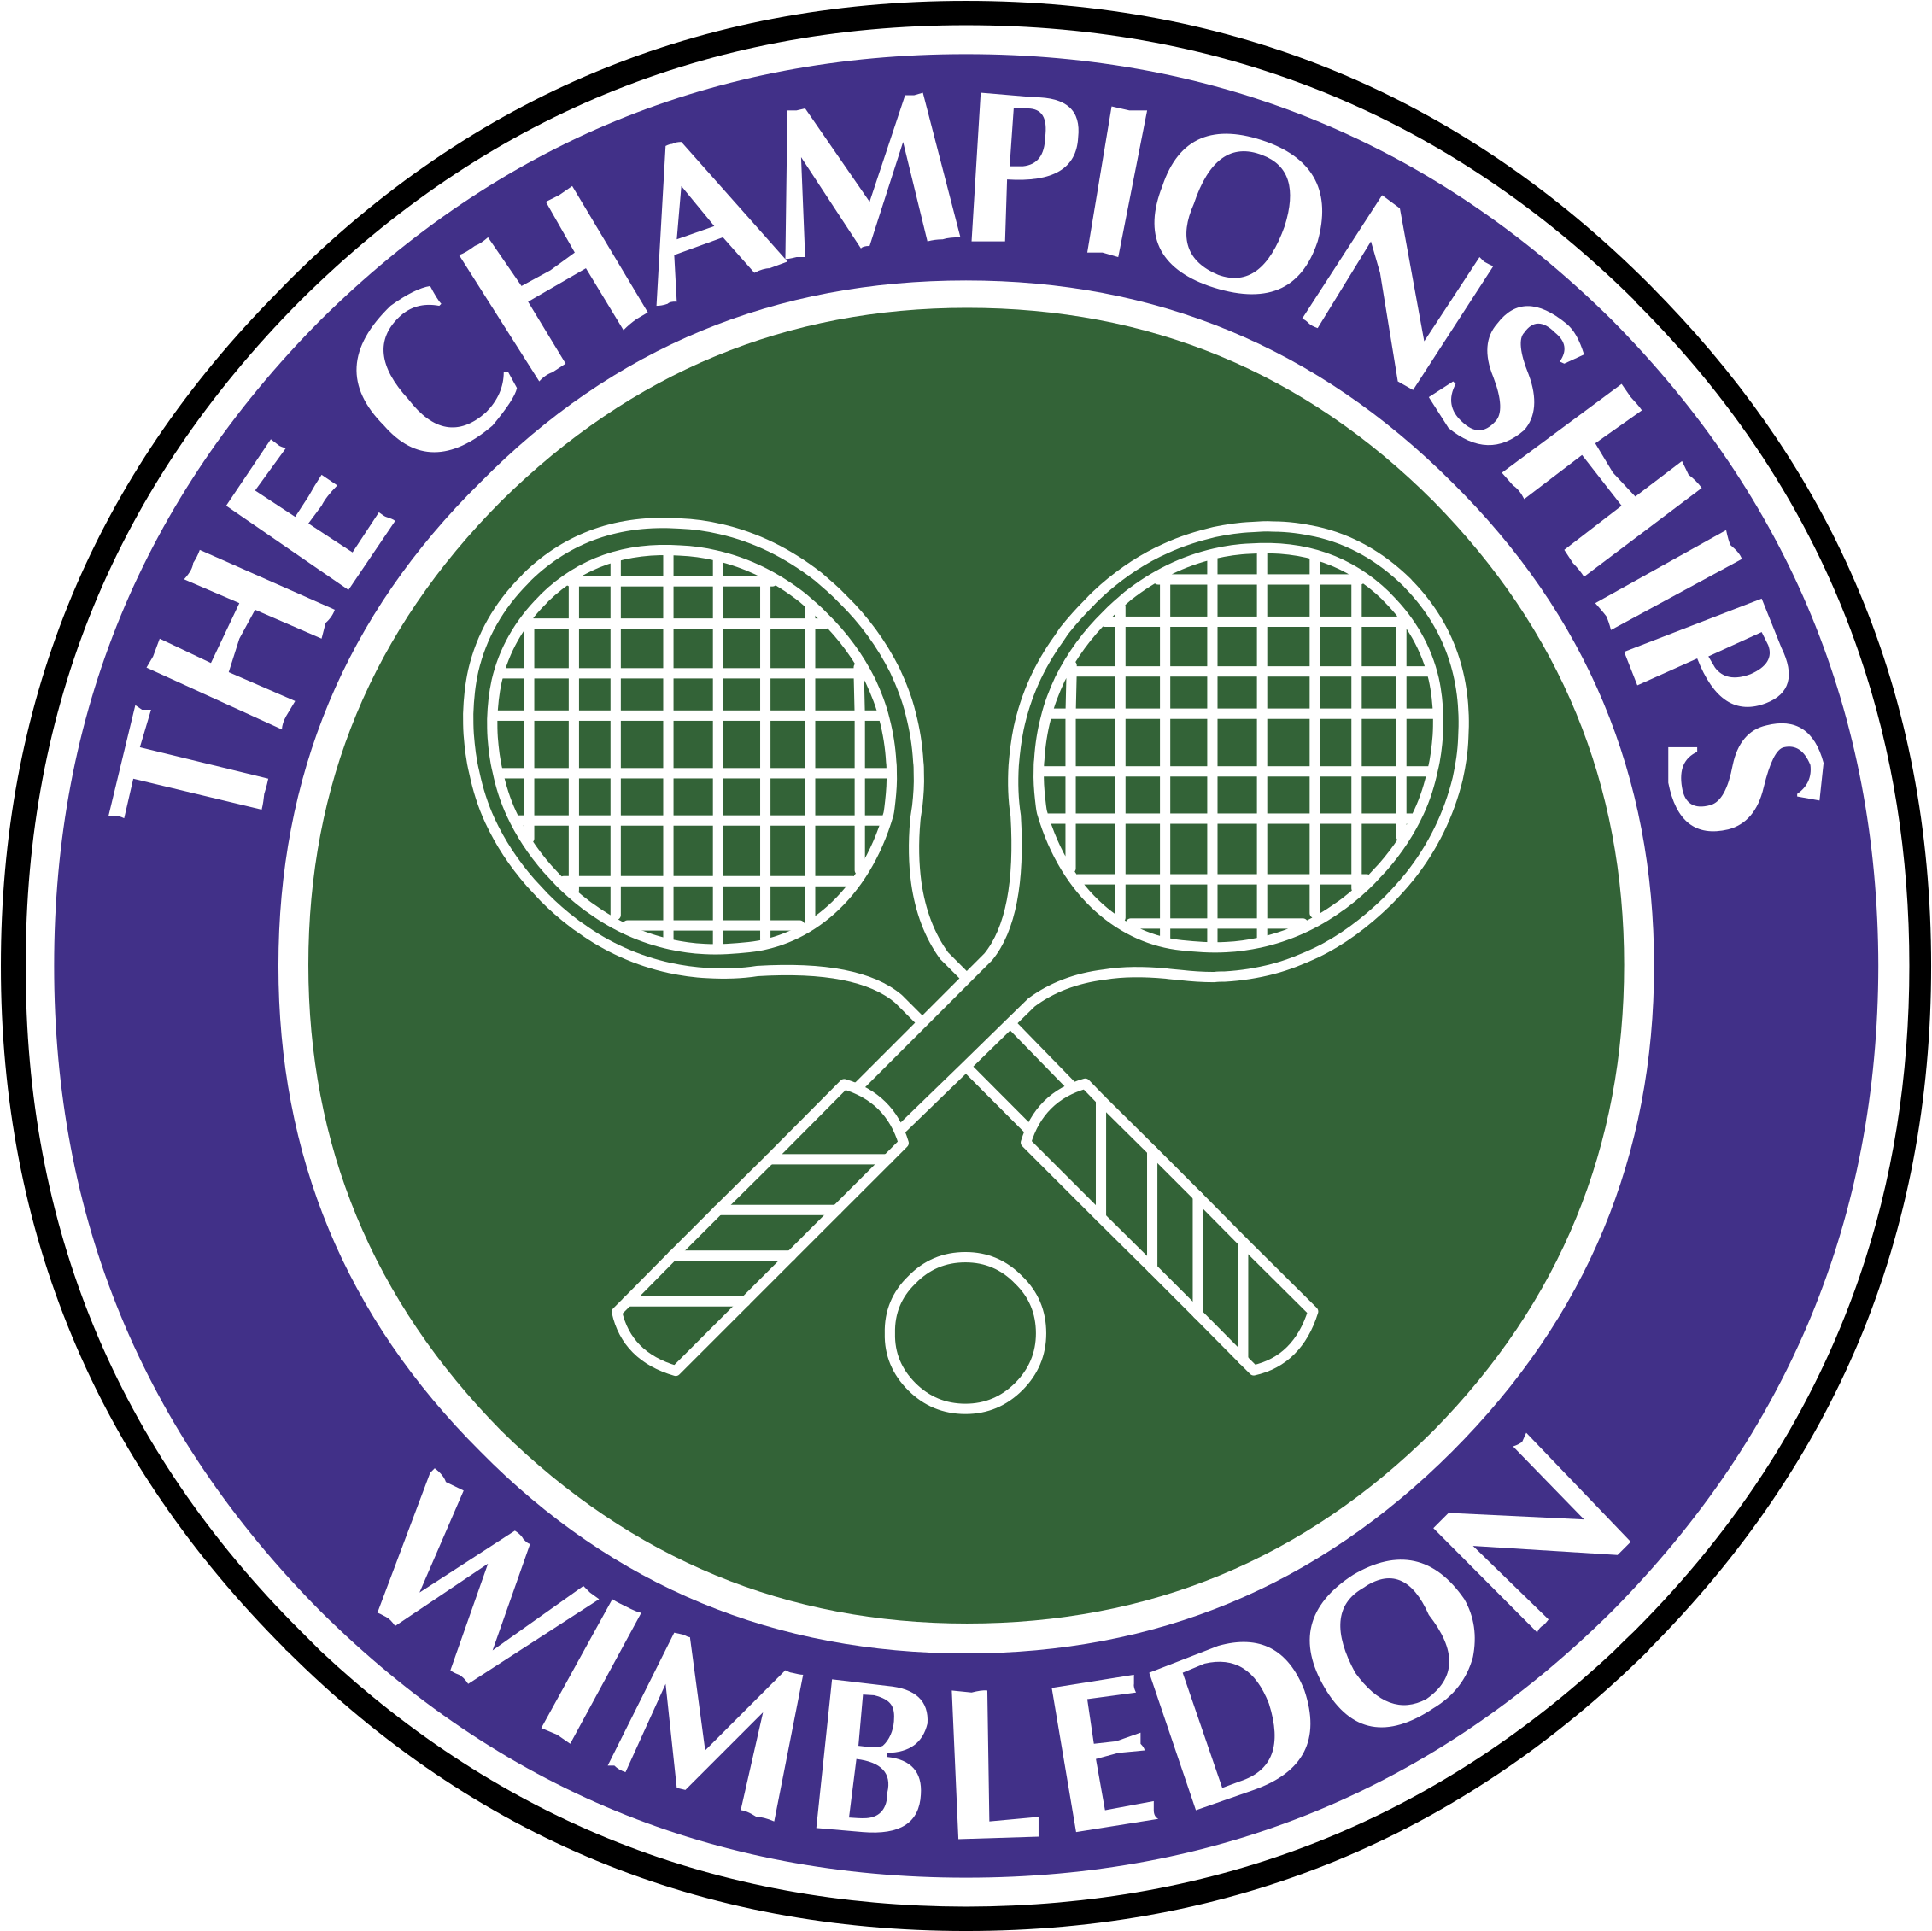 Boletos Wimbledon, costo de entradas Wimbledon